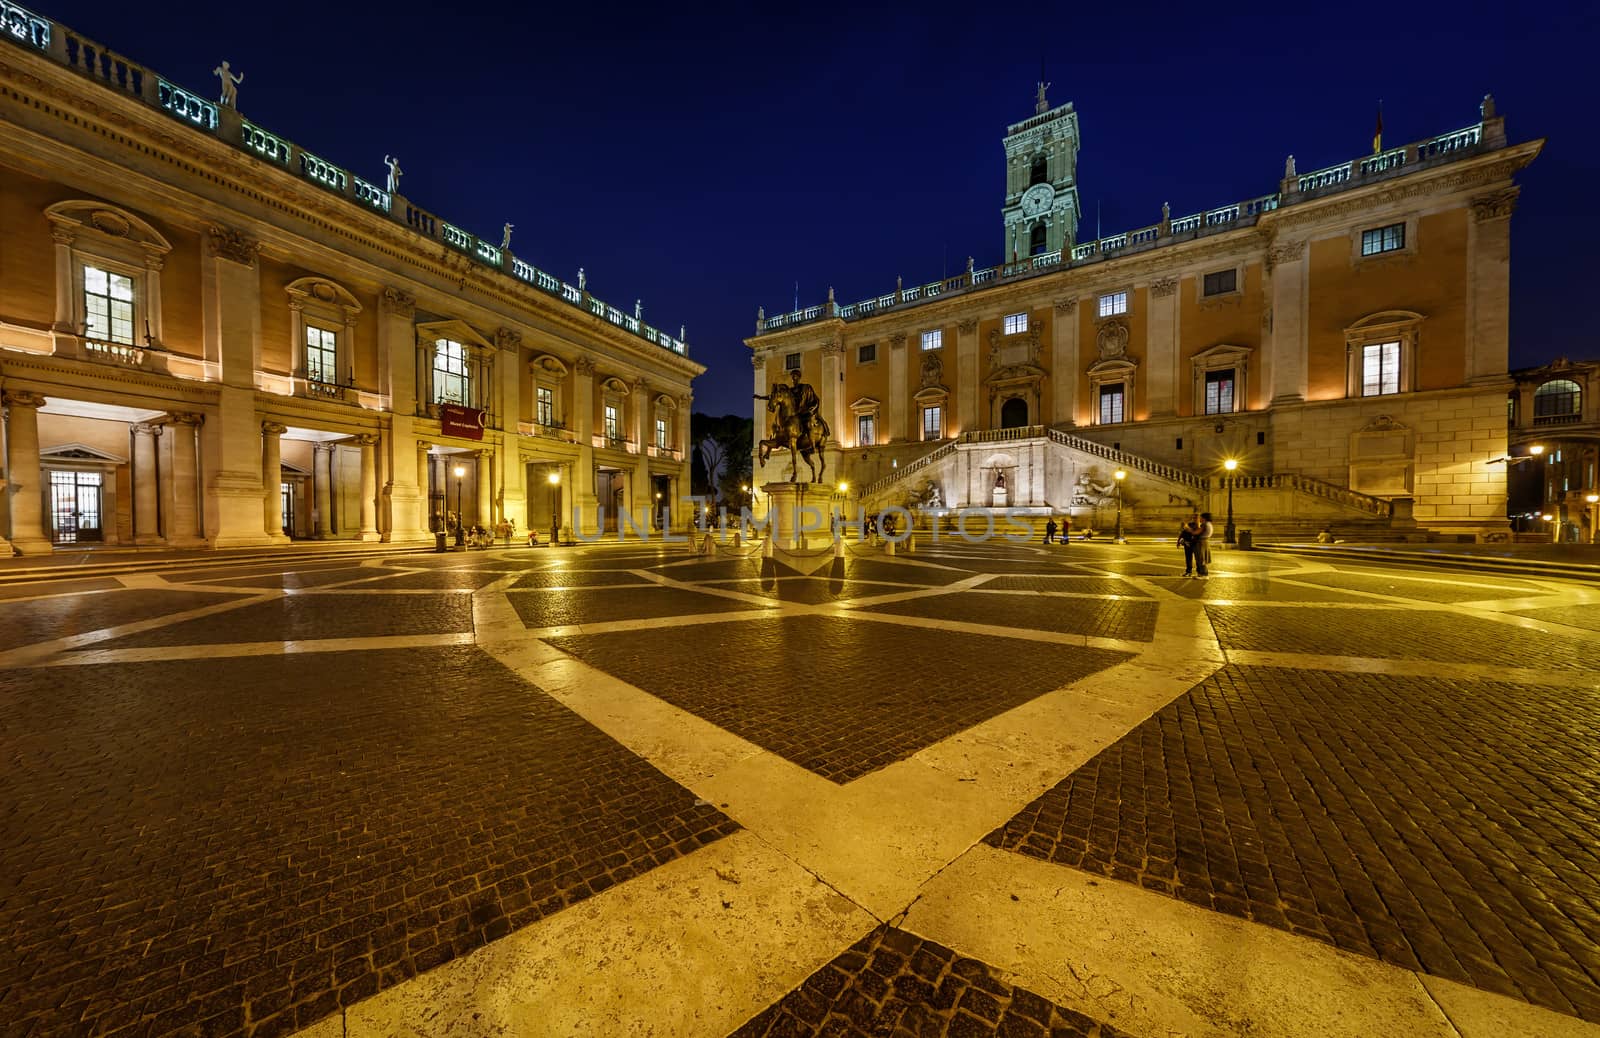 Piazza del Campidoglio on Capitoline Hill with Palazzo Senatorio and Equestrian Statue of Marcus Aurelius, Rome, Italy